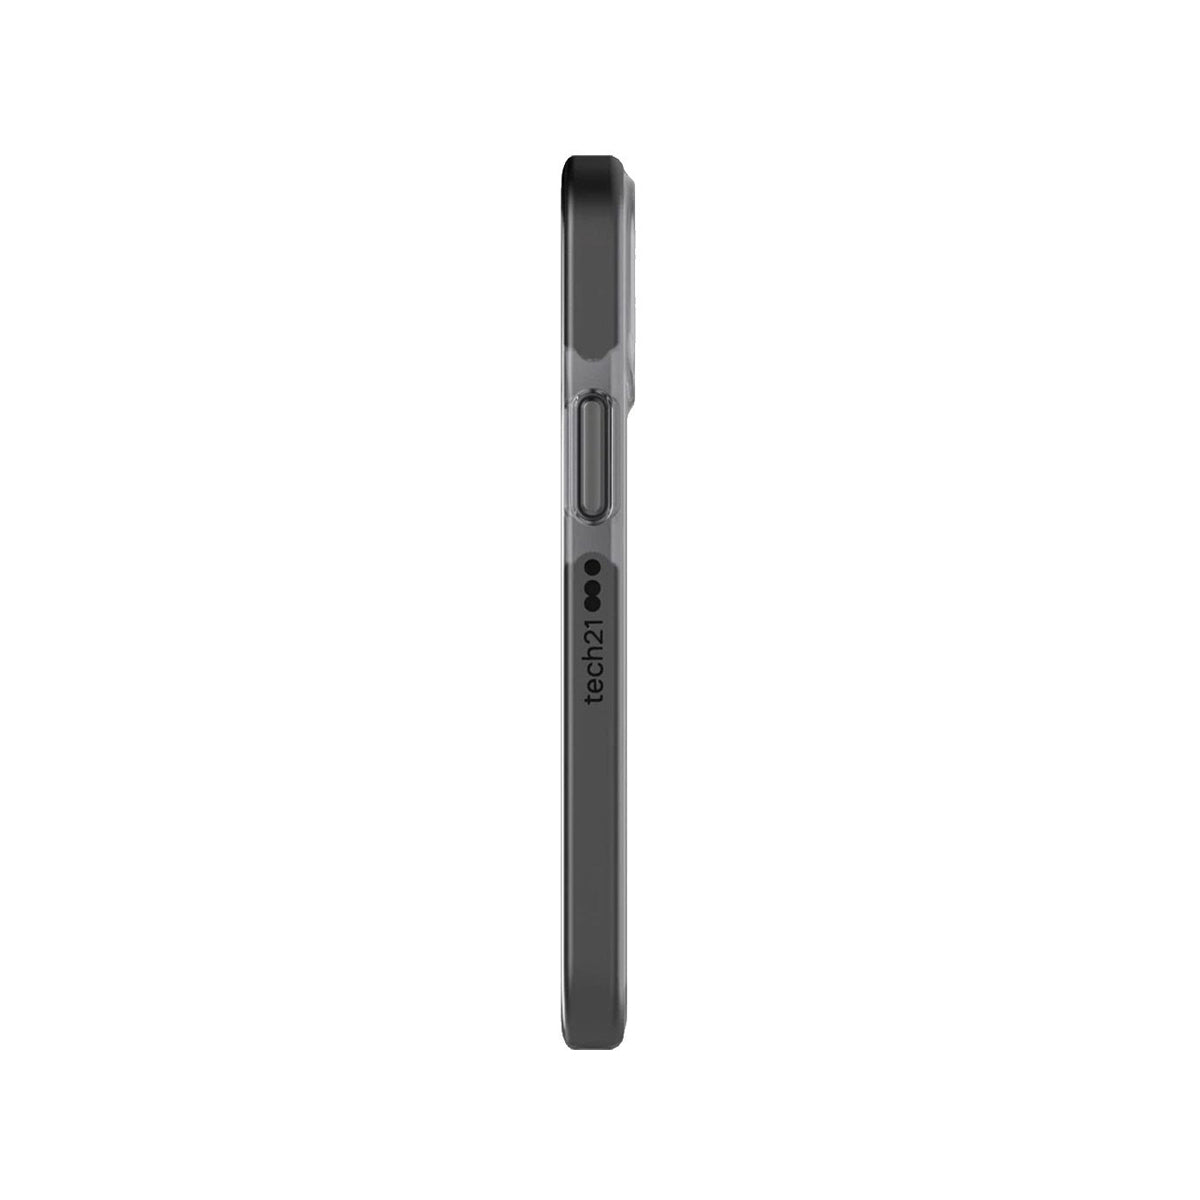 Tech21 Evo Check Case for iPhone 12 mini T21-8351 - Smokey Black.